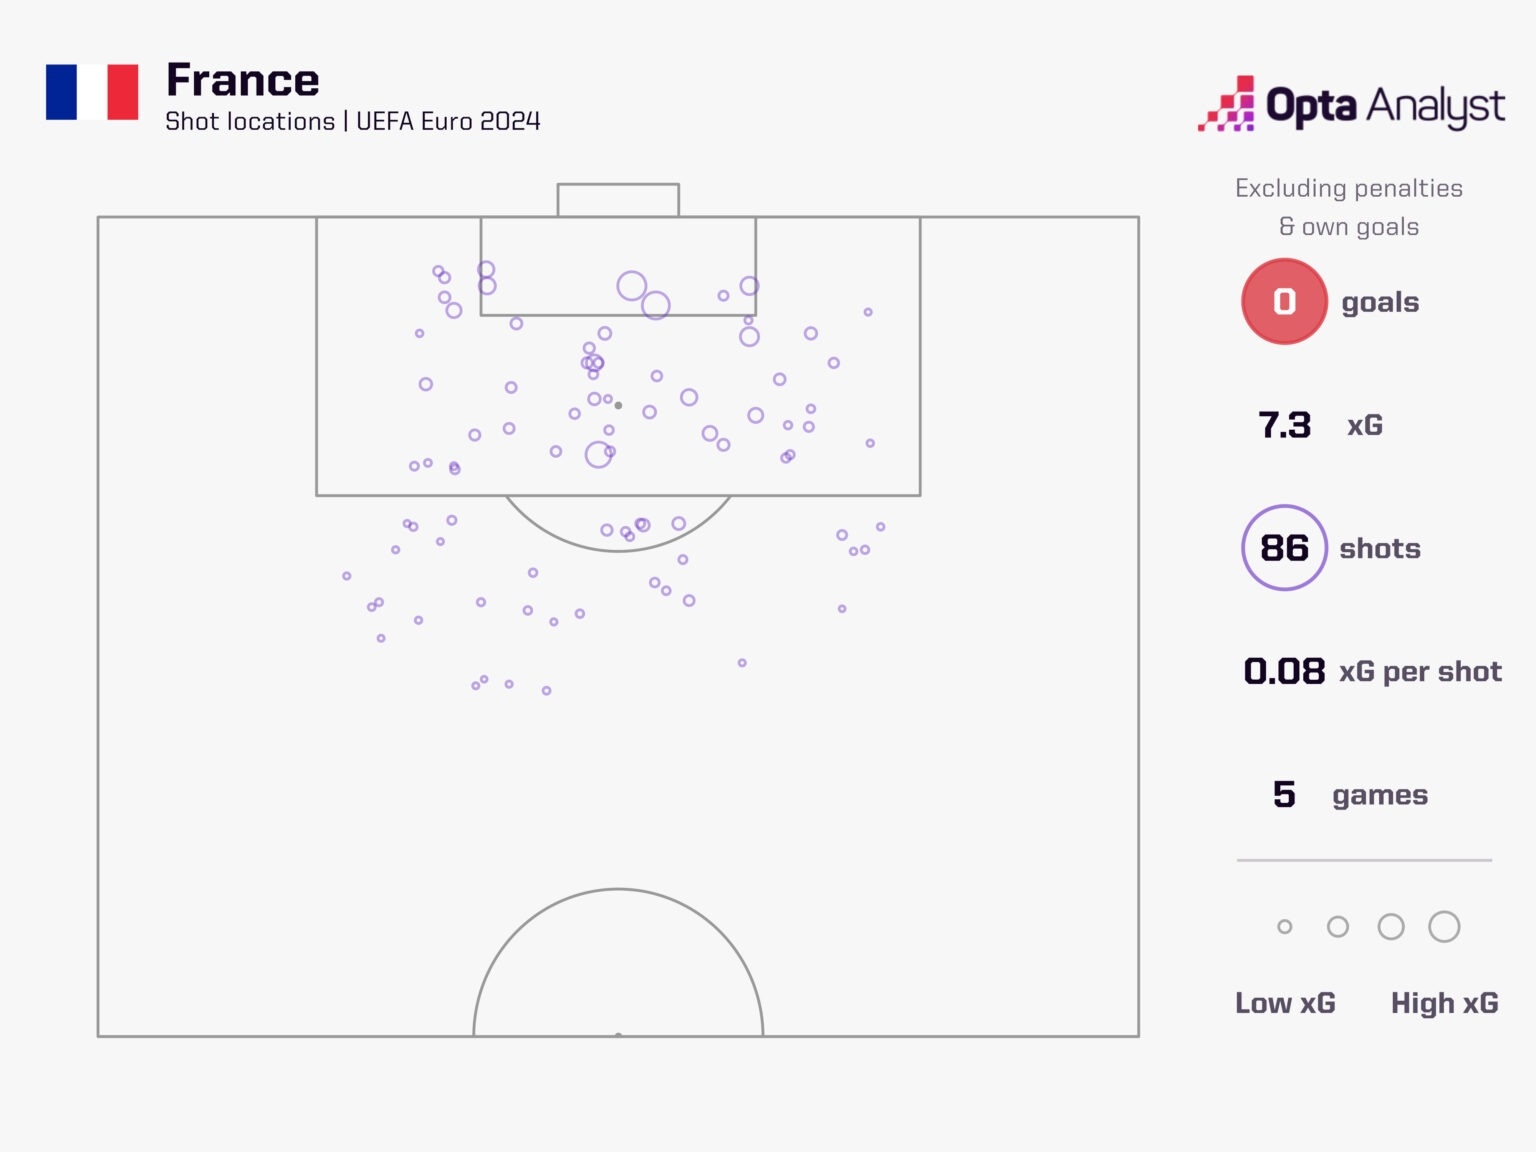 奇怪的数据法国本届5场86次非点球射门&42次被射门，产生0进球